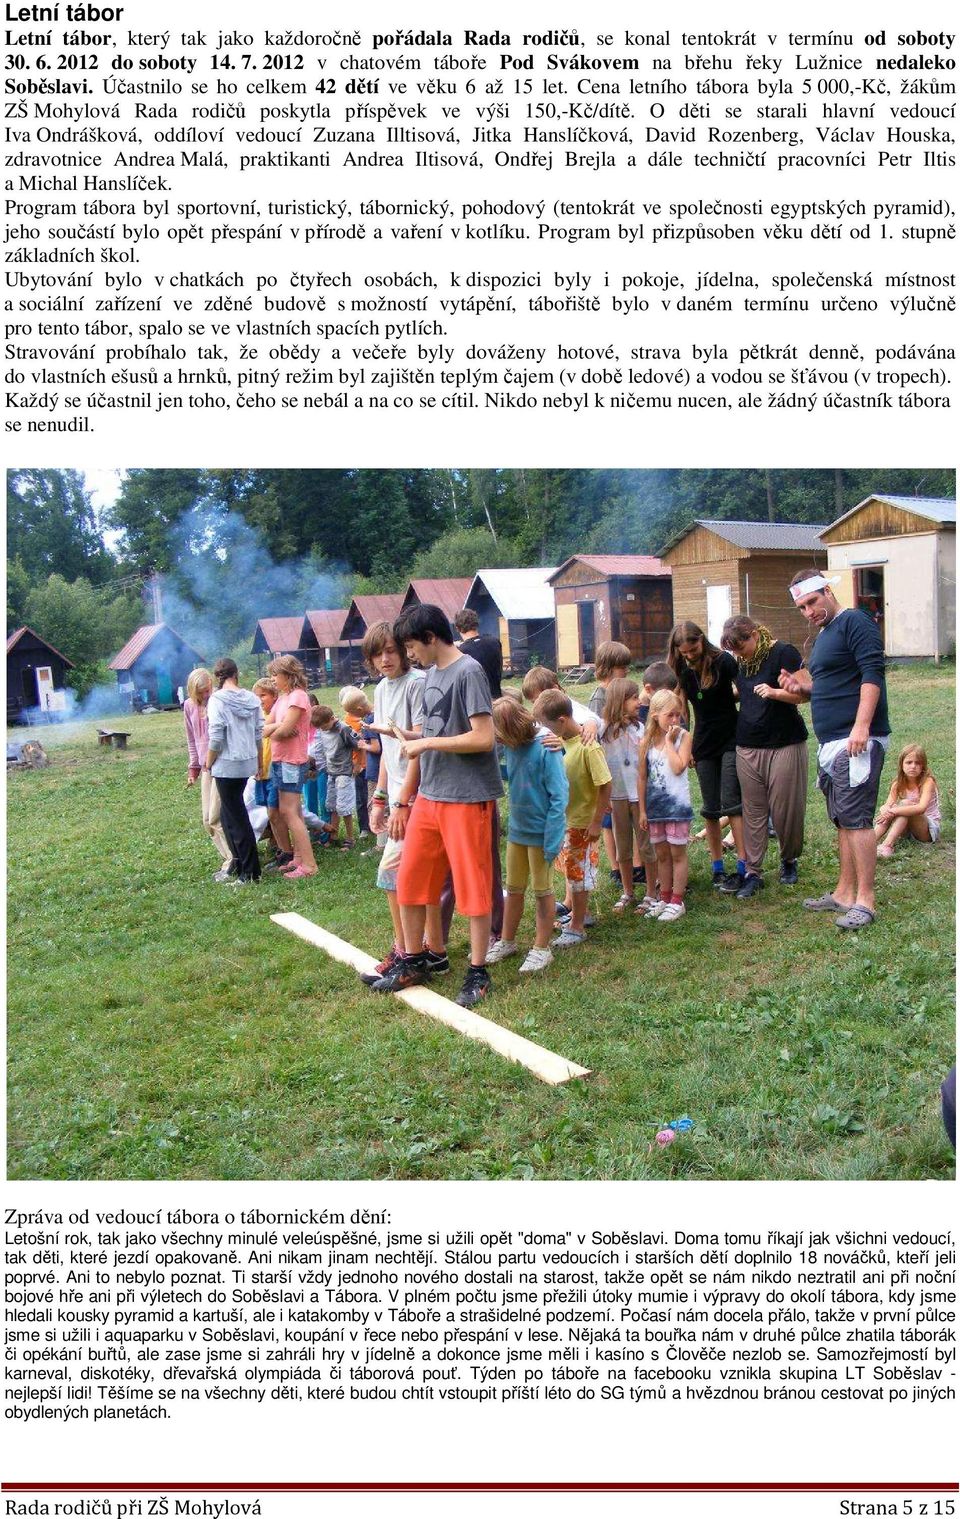 Cena letního tábora byla 5 000,-Kč, žákům ZŠ Mohylová Rada rodičů poskytla příspěvek ve výši 150,-Kč/dítě.